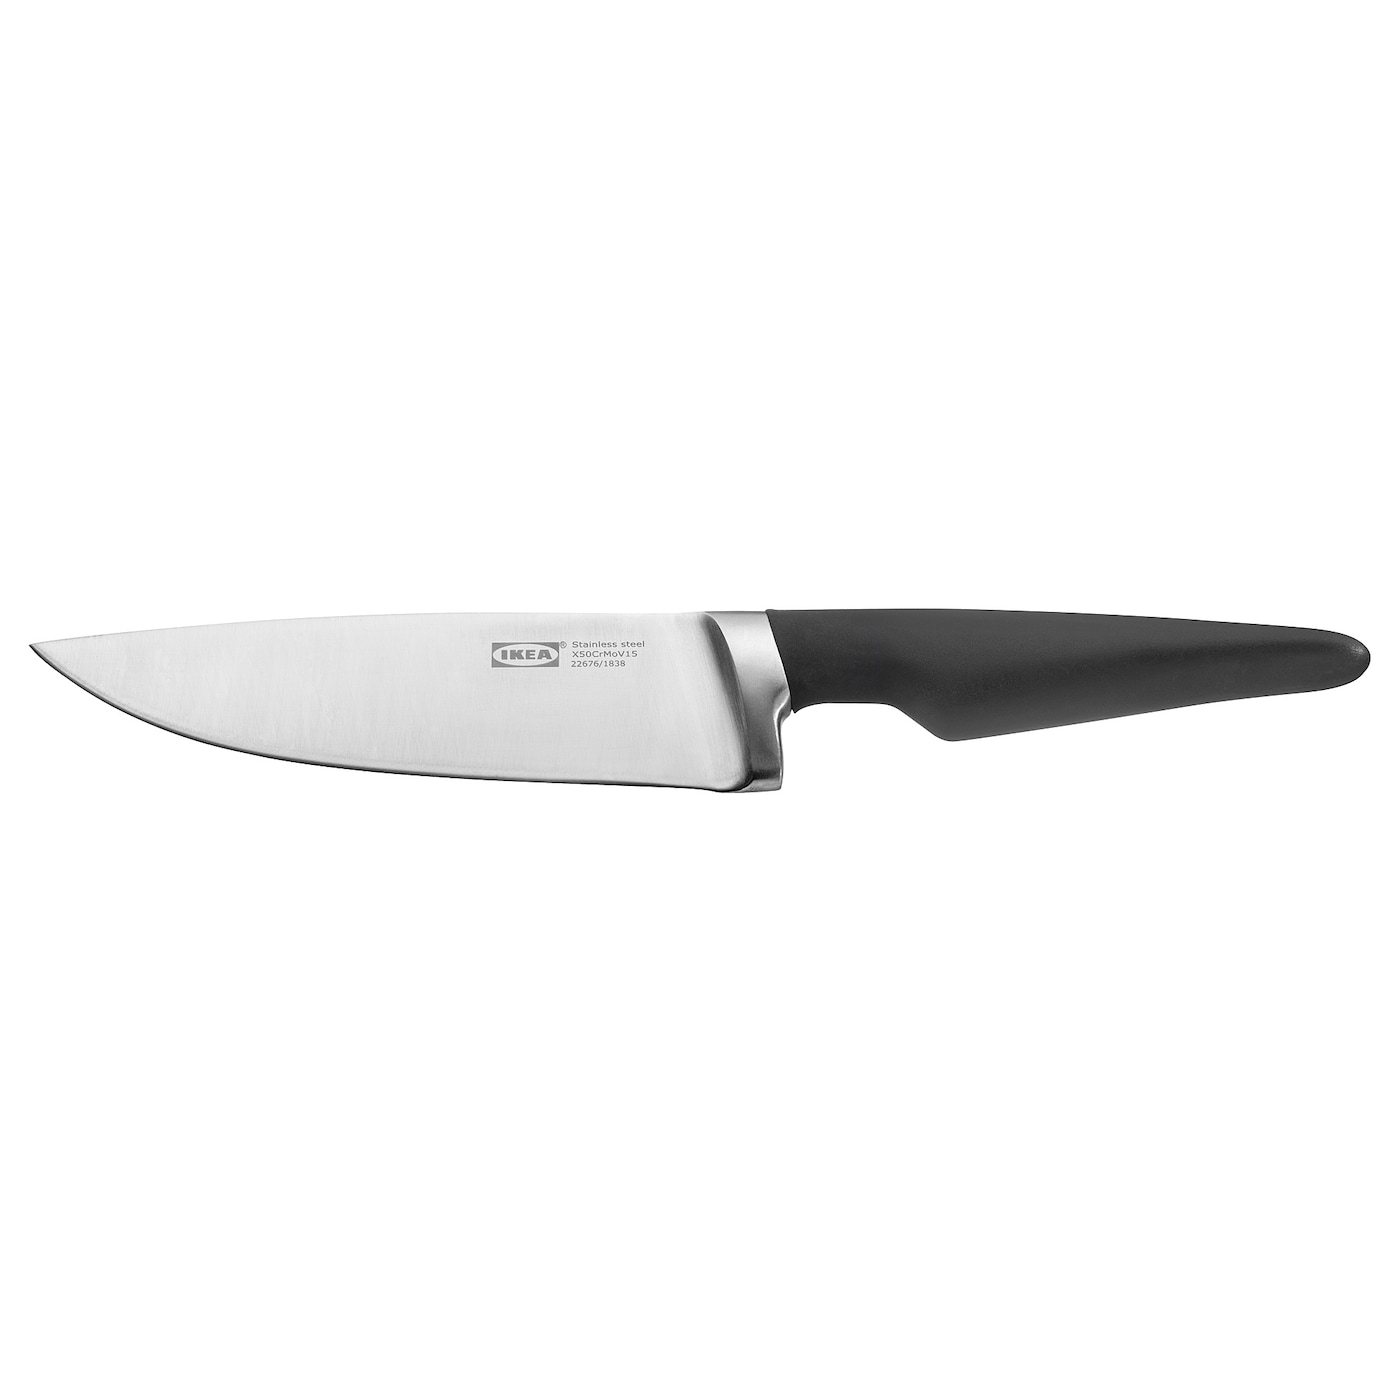 Поварской нож - IKEA VÖRDA/VORDA, 31см, черный/серебристый, ВОРДА ИКЕА